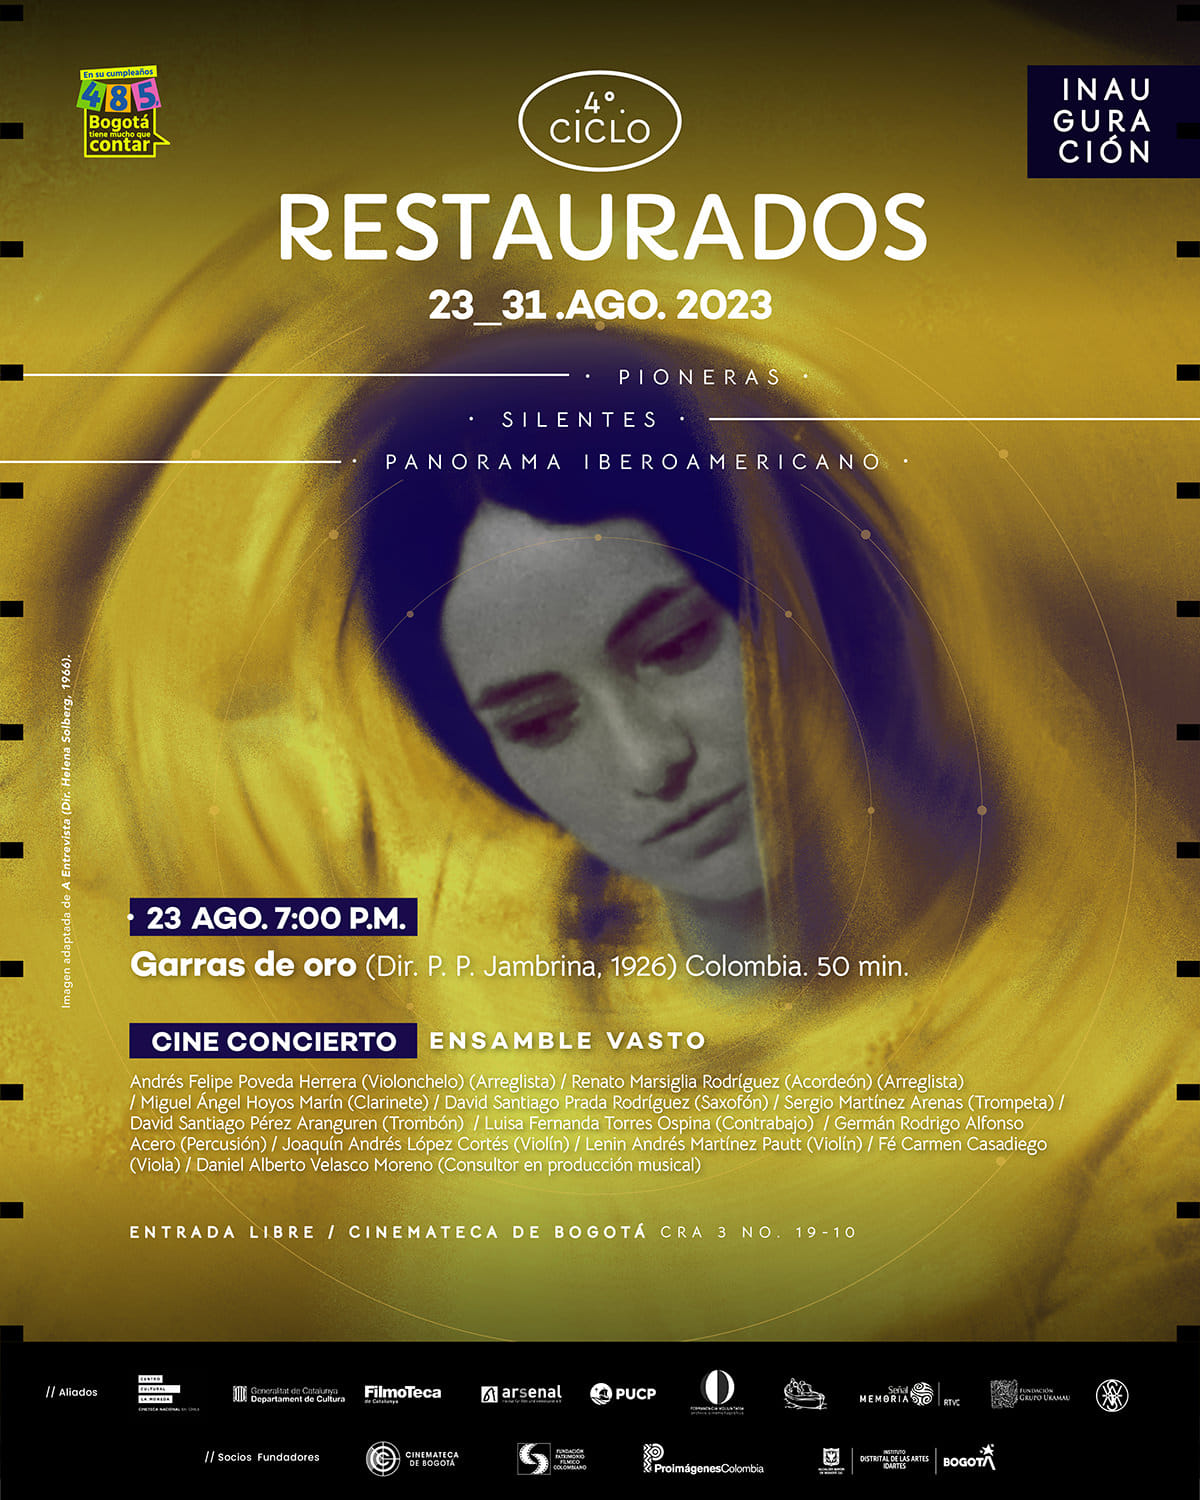 Miércoles 23 de agosto de 2023 a las 7:00 p.m. en la Cinemateca de Bogotá